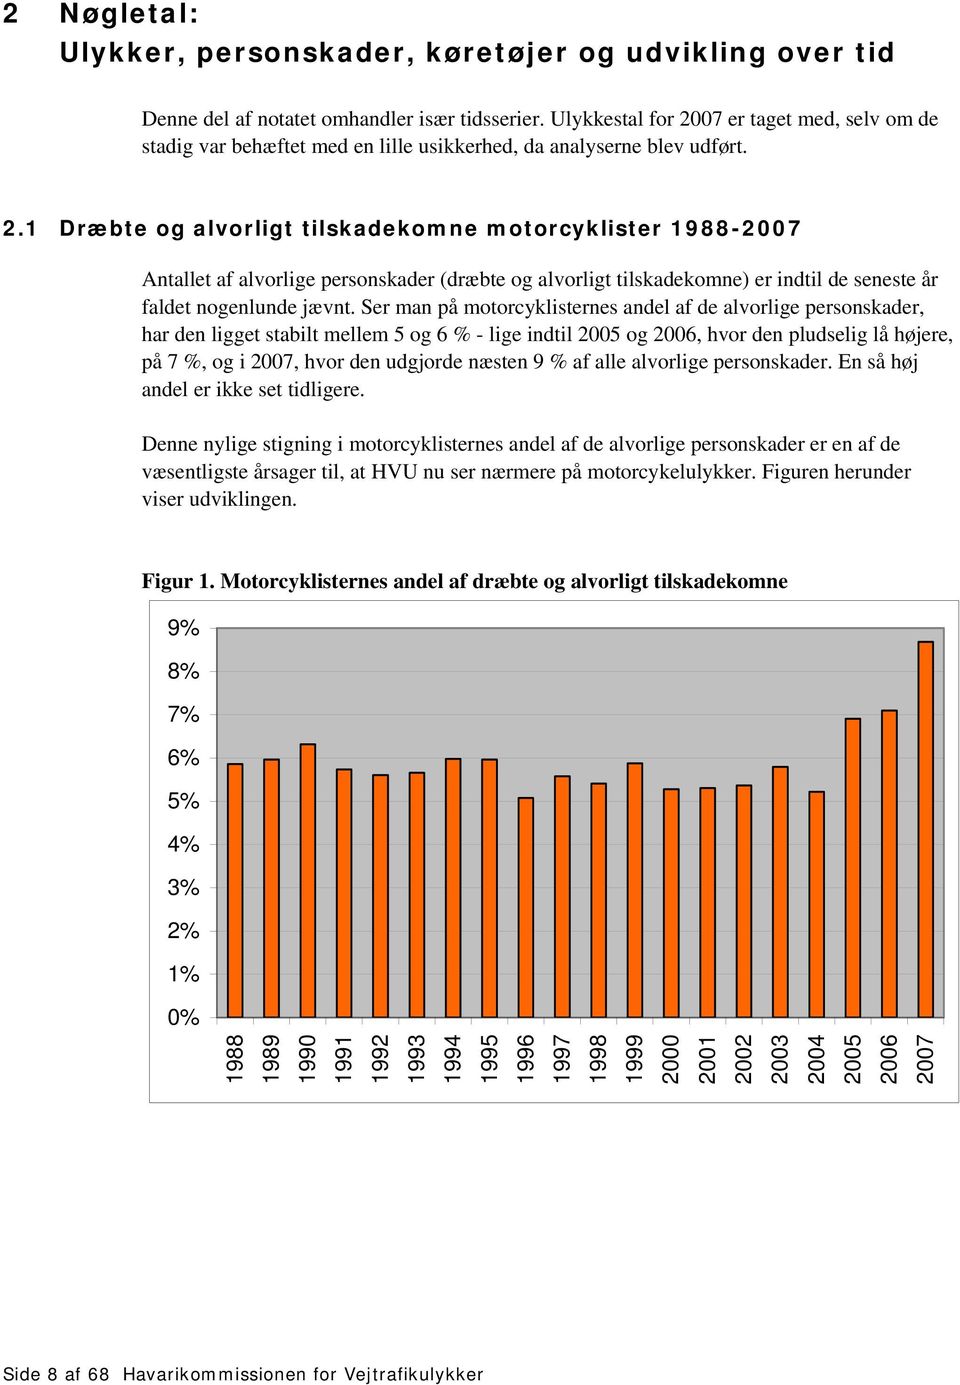 Ser man på motorcyklisternes andel af de alvorlige personskader, har den ligget stabilt mellem 5 og 6 % - lige indtil 2005 og 2006, hvor den pludselig lå højere, på 7 %, og i 2007, hvor den udgjorde